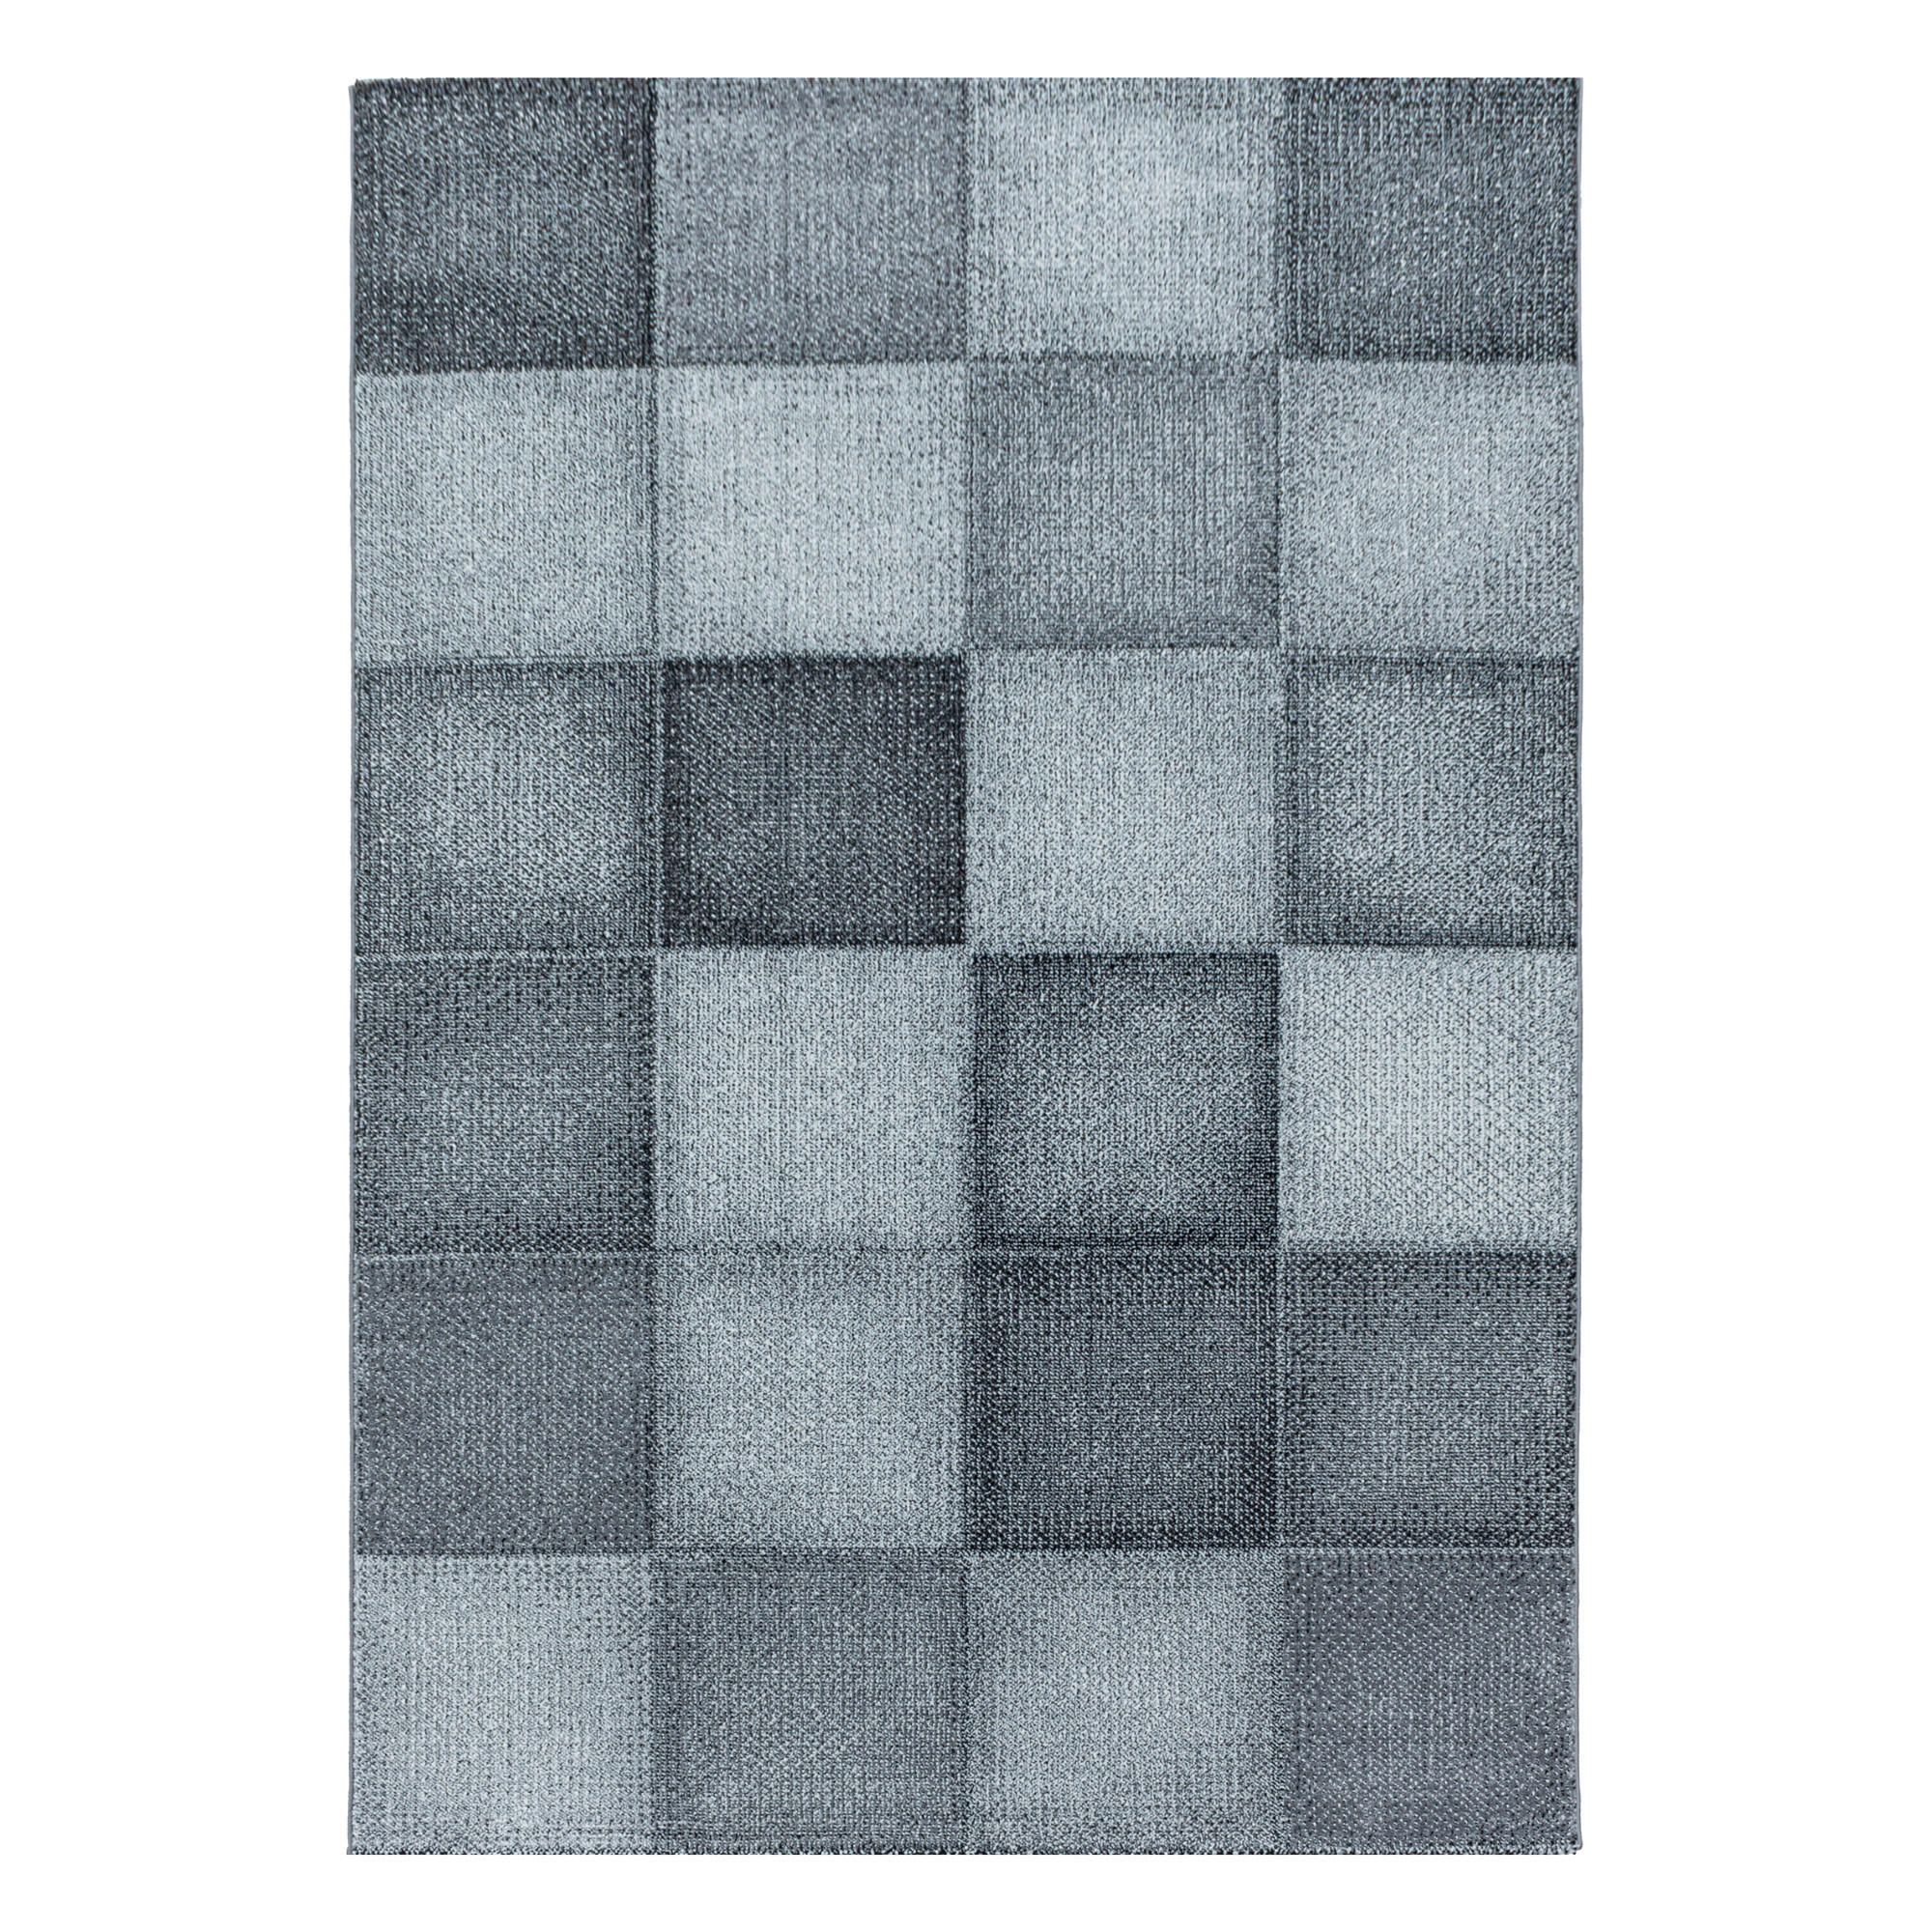 WEBTEPPICH  80/150 cm  Grau   - Grau, Design, Textil (80/150cm) - Novel